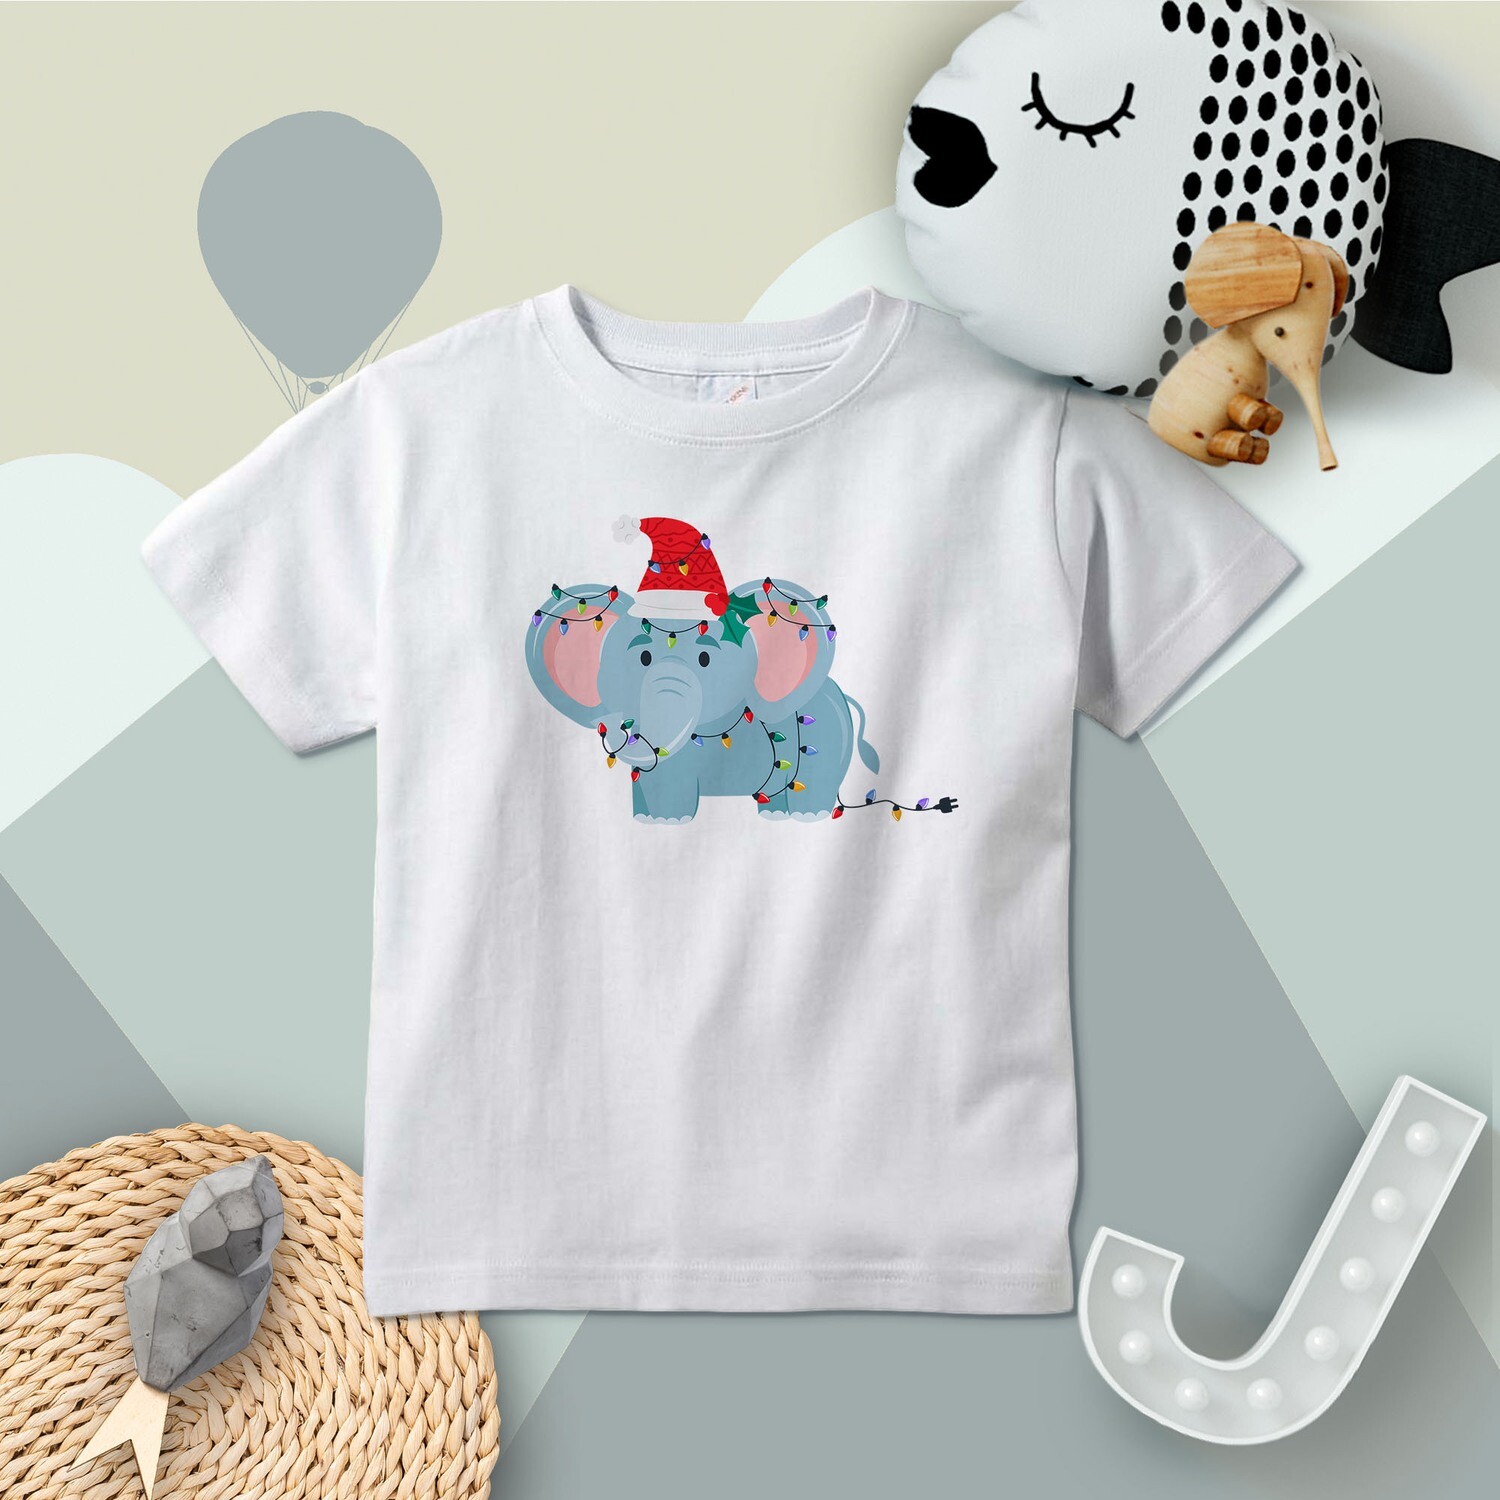 Holiday Elephant Toddler Shirt